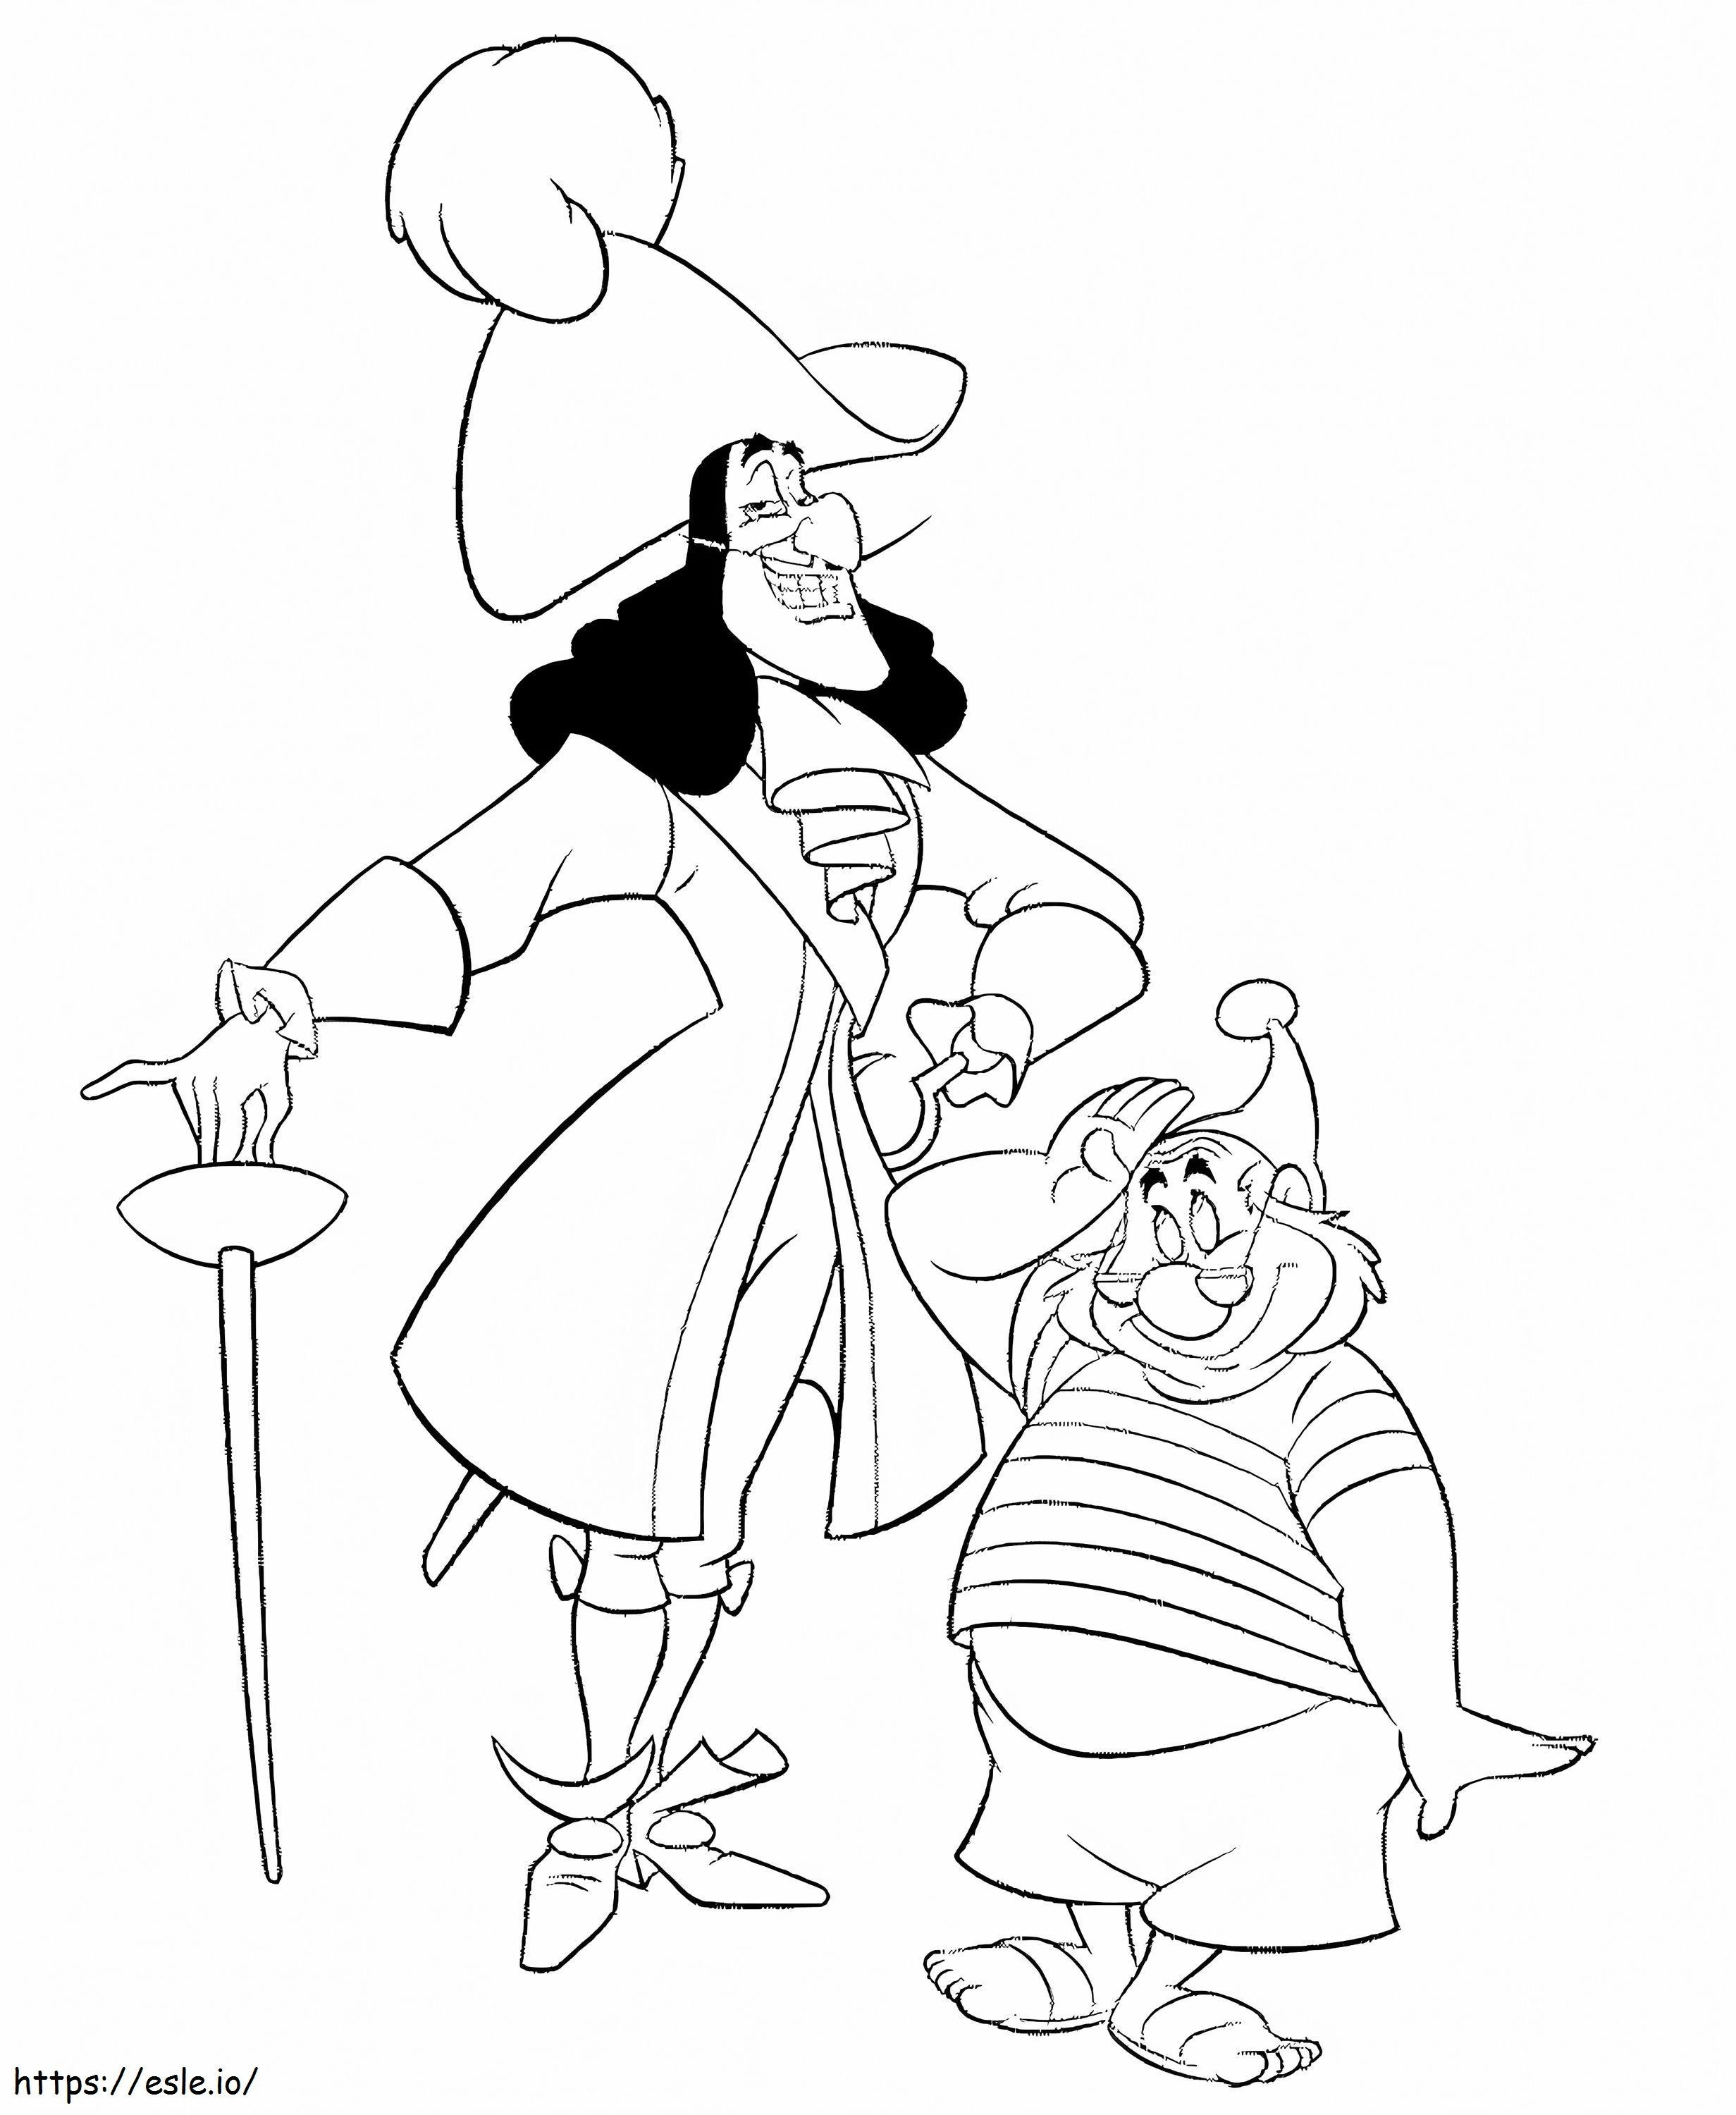 Căpitanul Hook și Smee de colorat